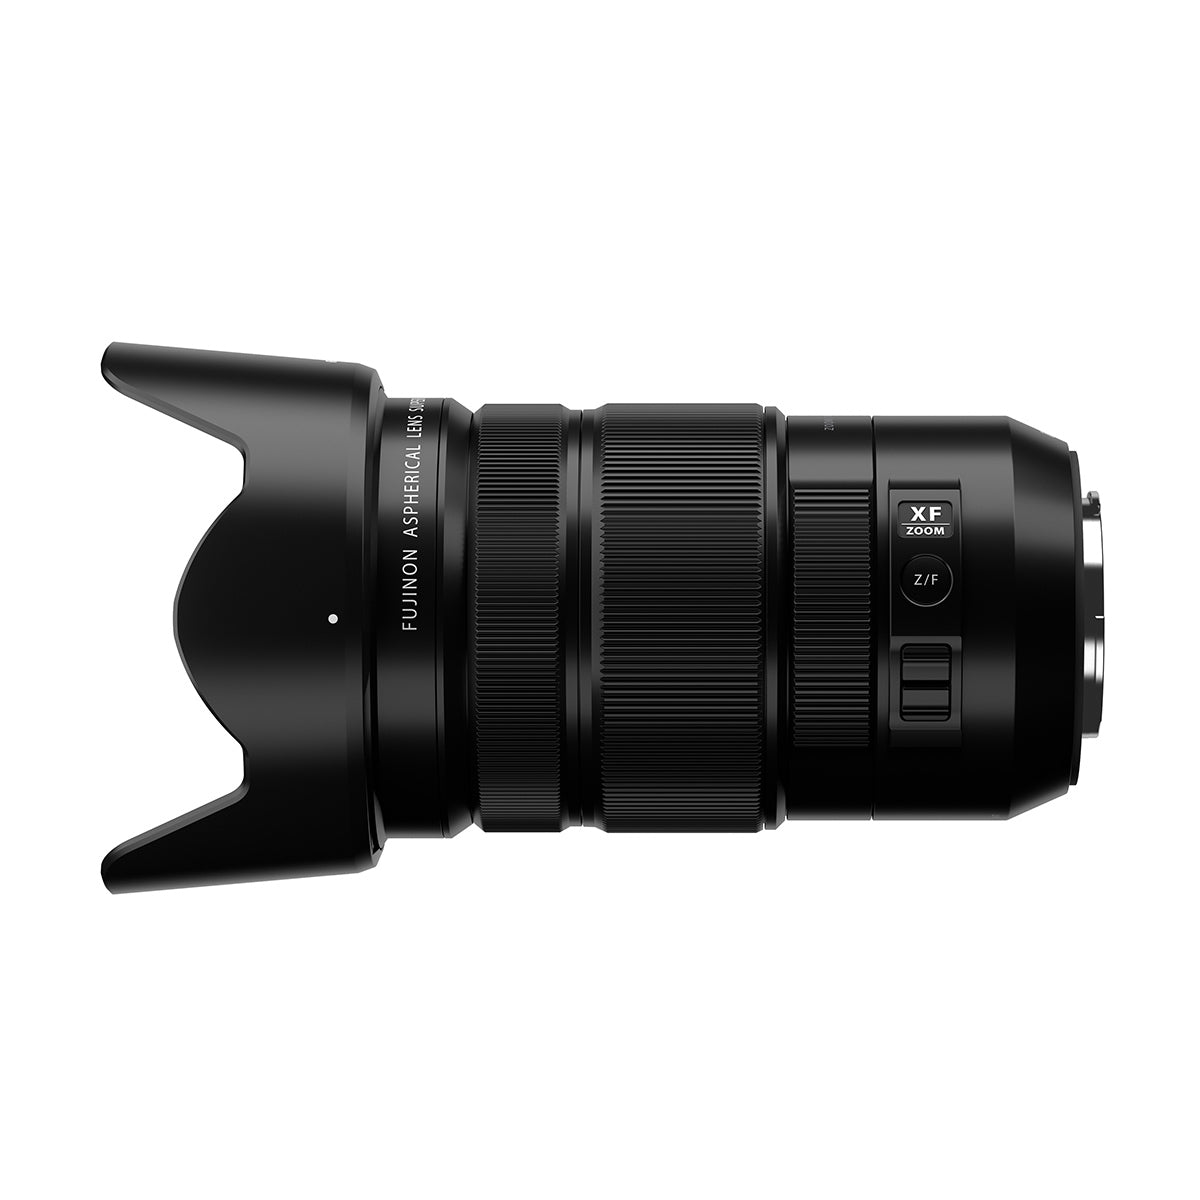 Fujifilm XF 18-120mm F4 LM PZ WR Lens